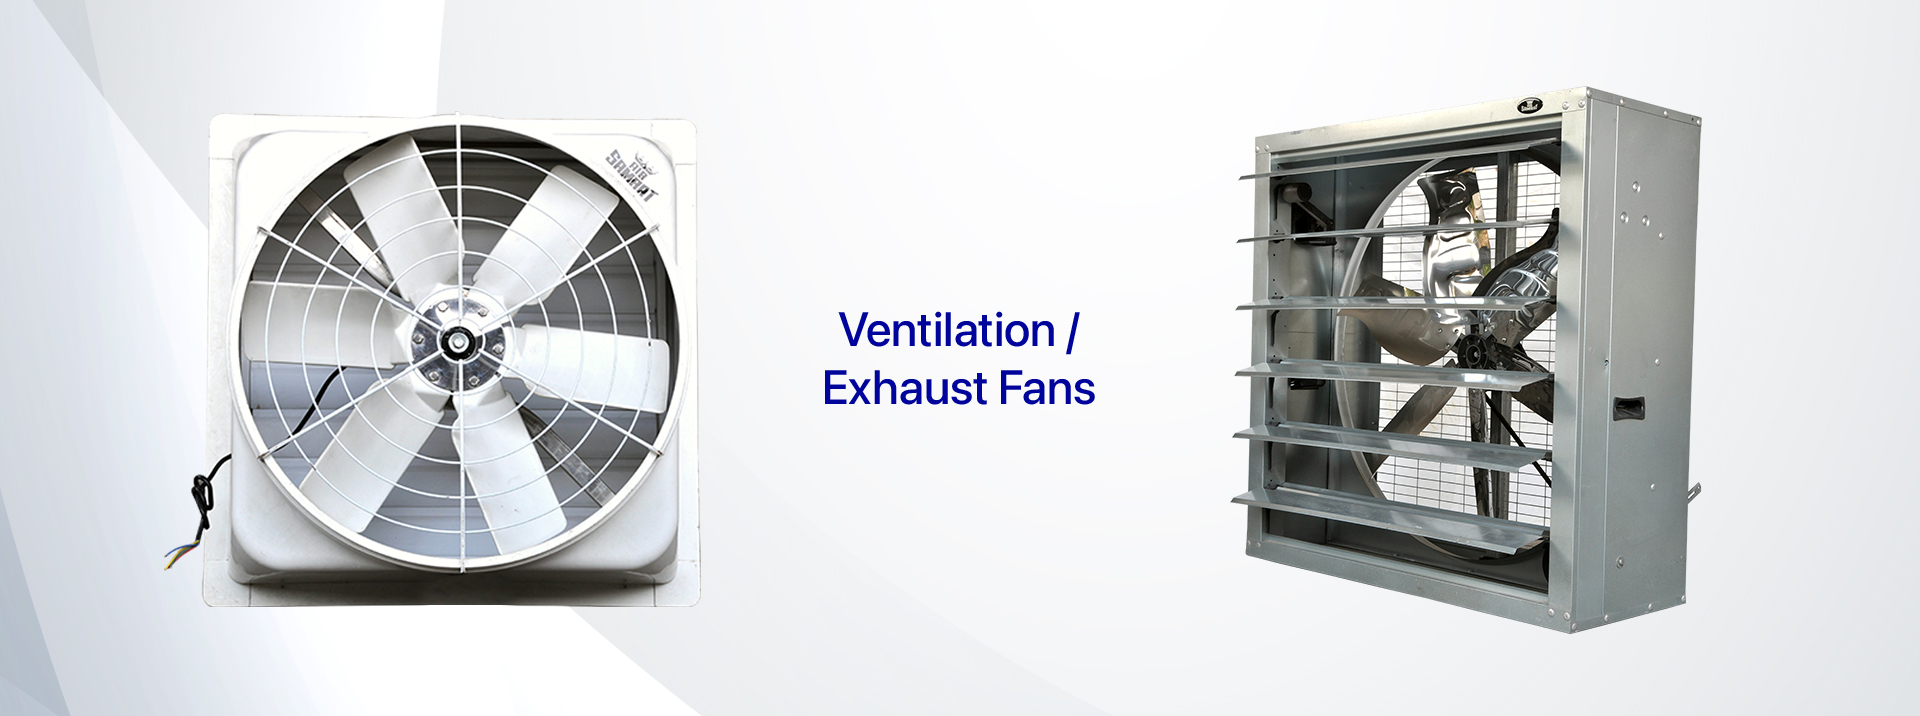 Ventilation Fans